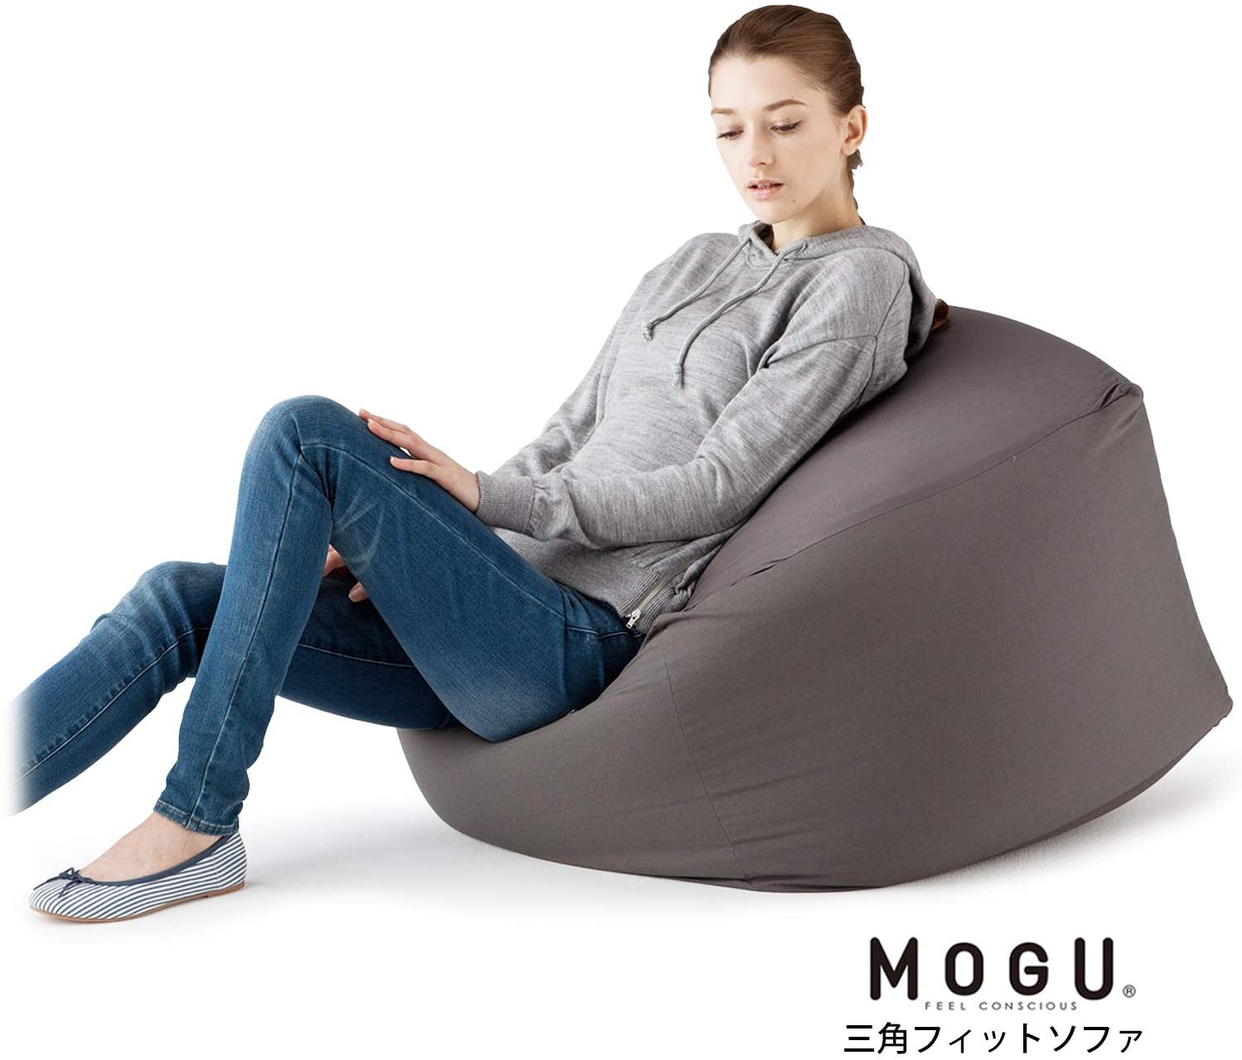 MOGU(モグ) 三角フィットソファの商品画像6 